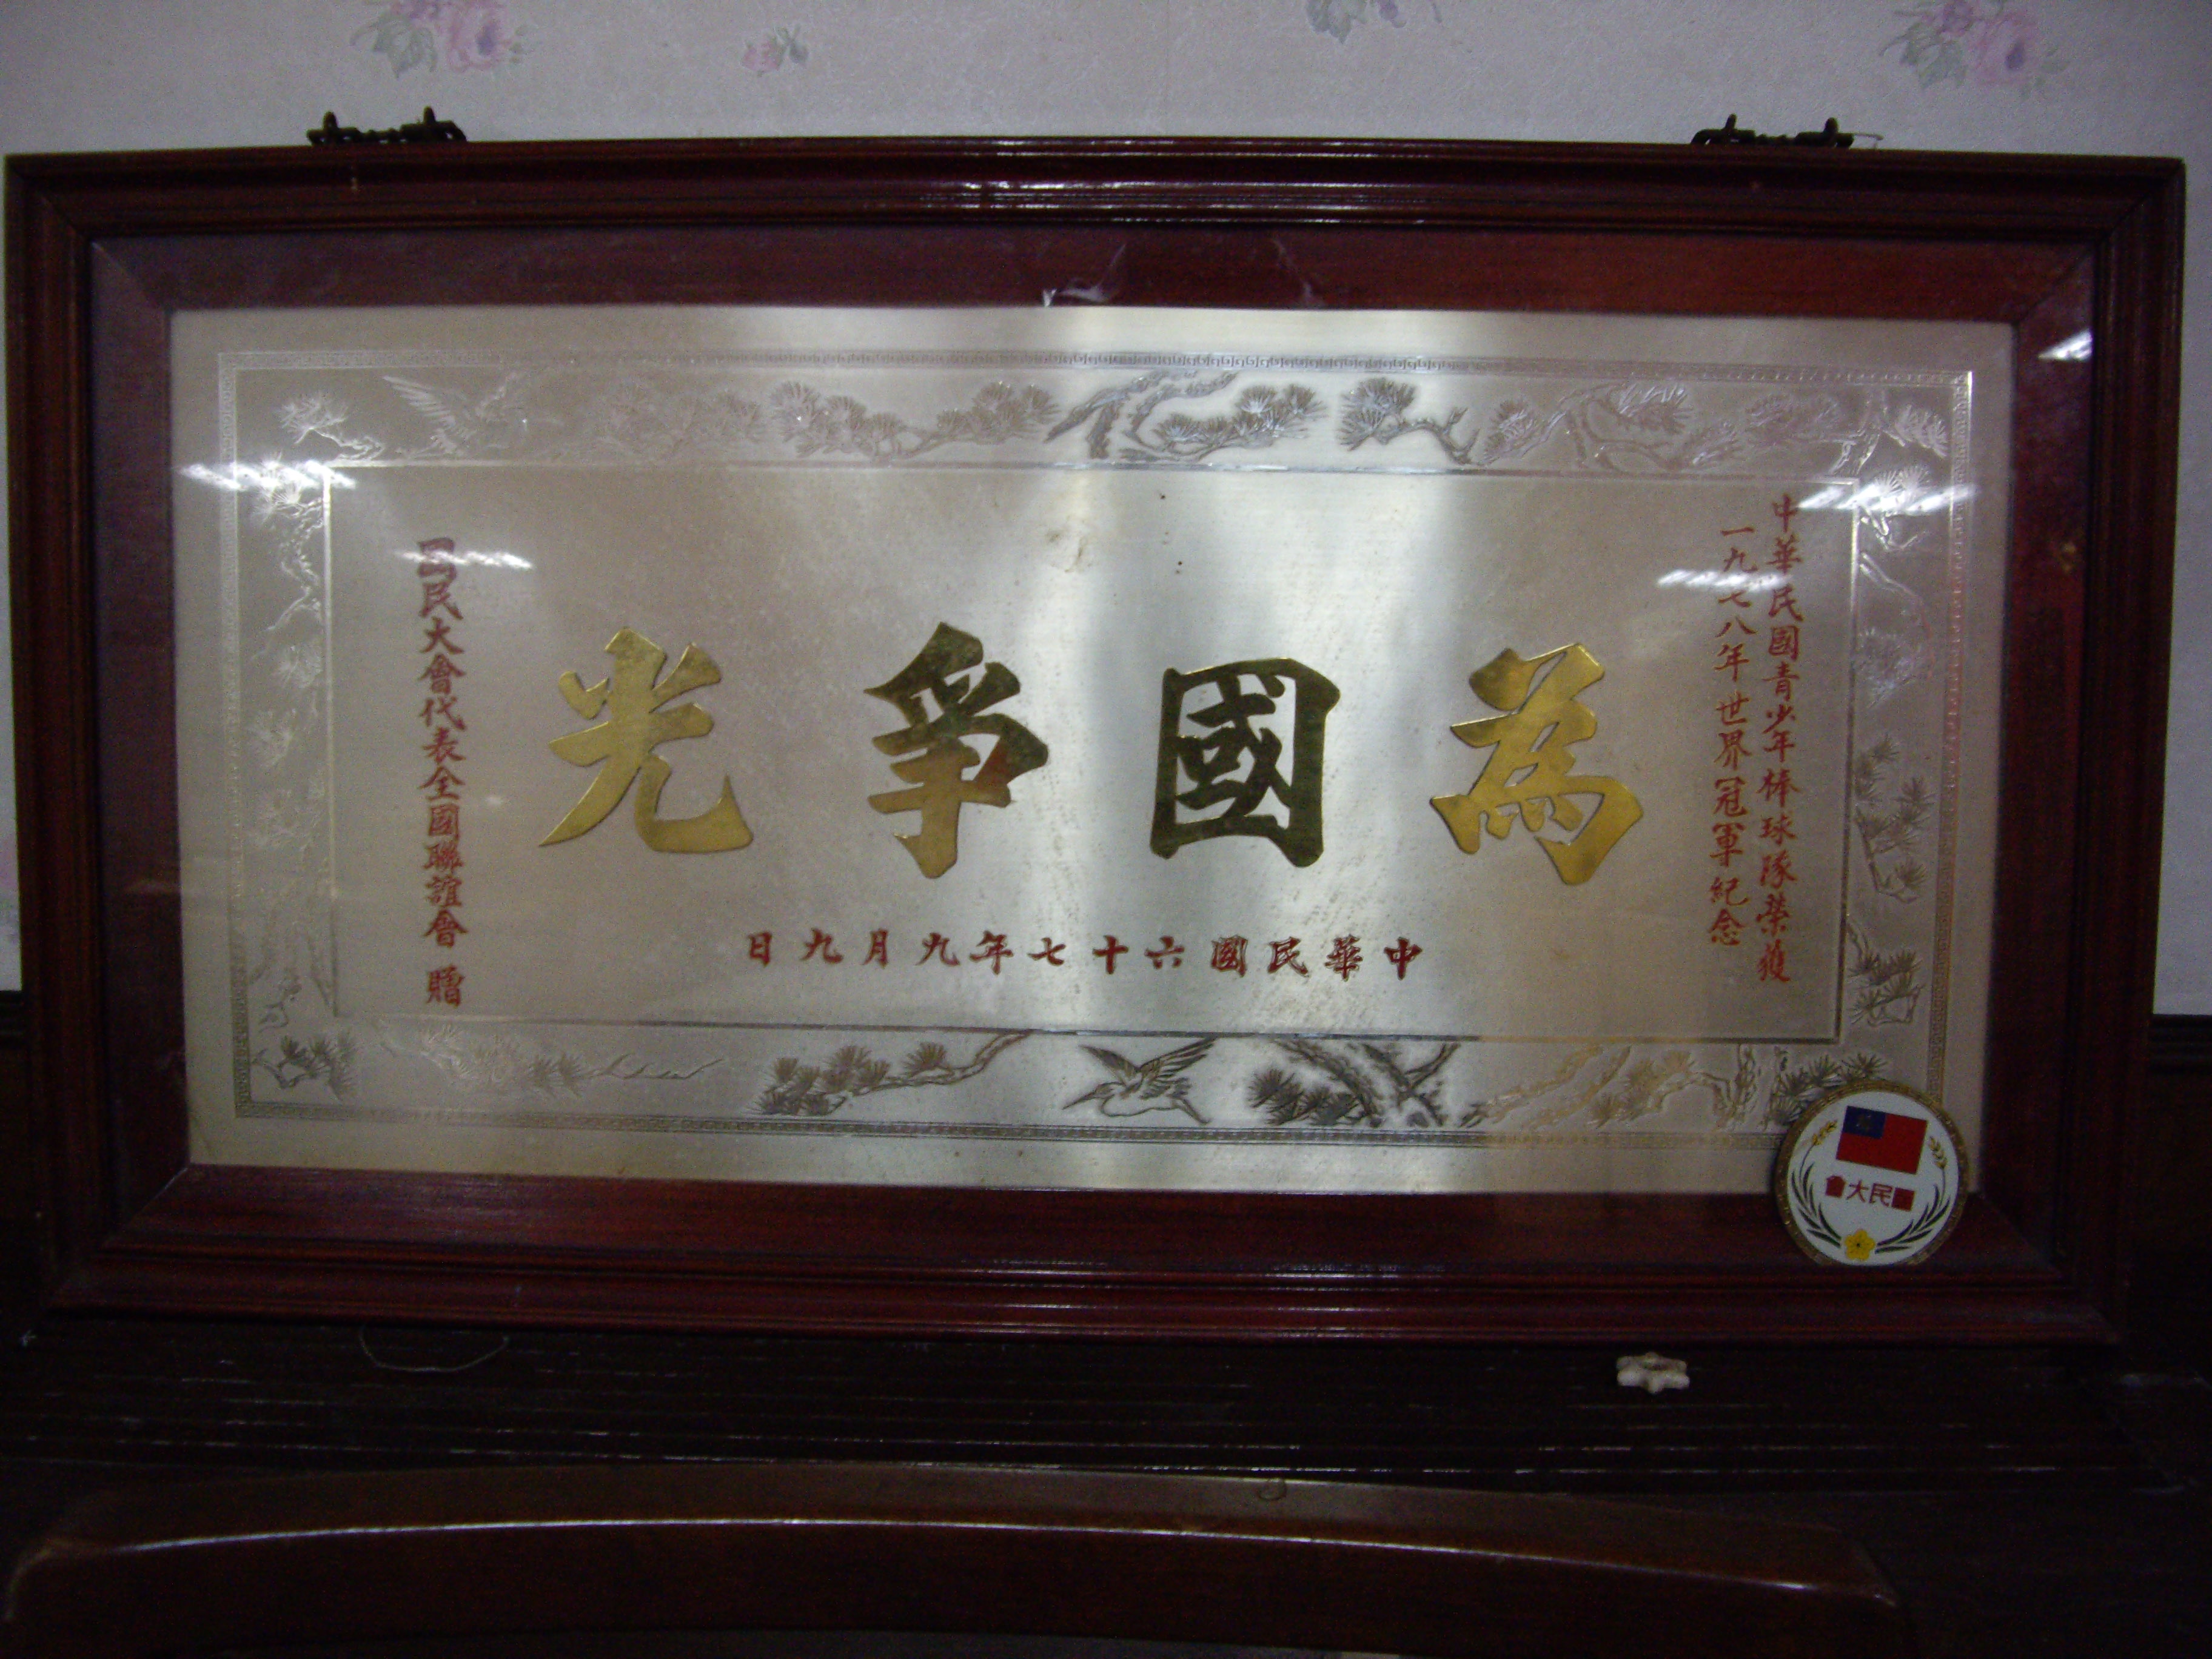 中華民國青少年棒球隊獲1978年世界冠軍紀念獎牌